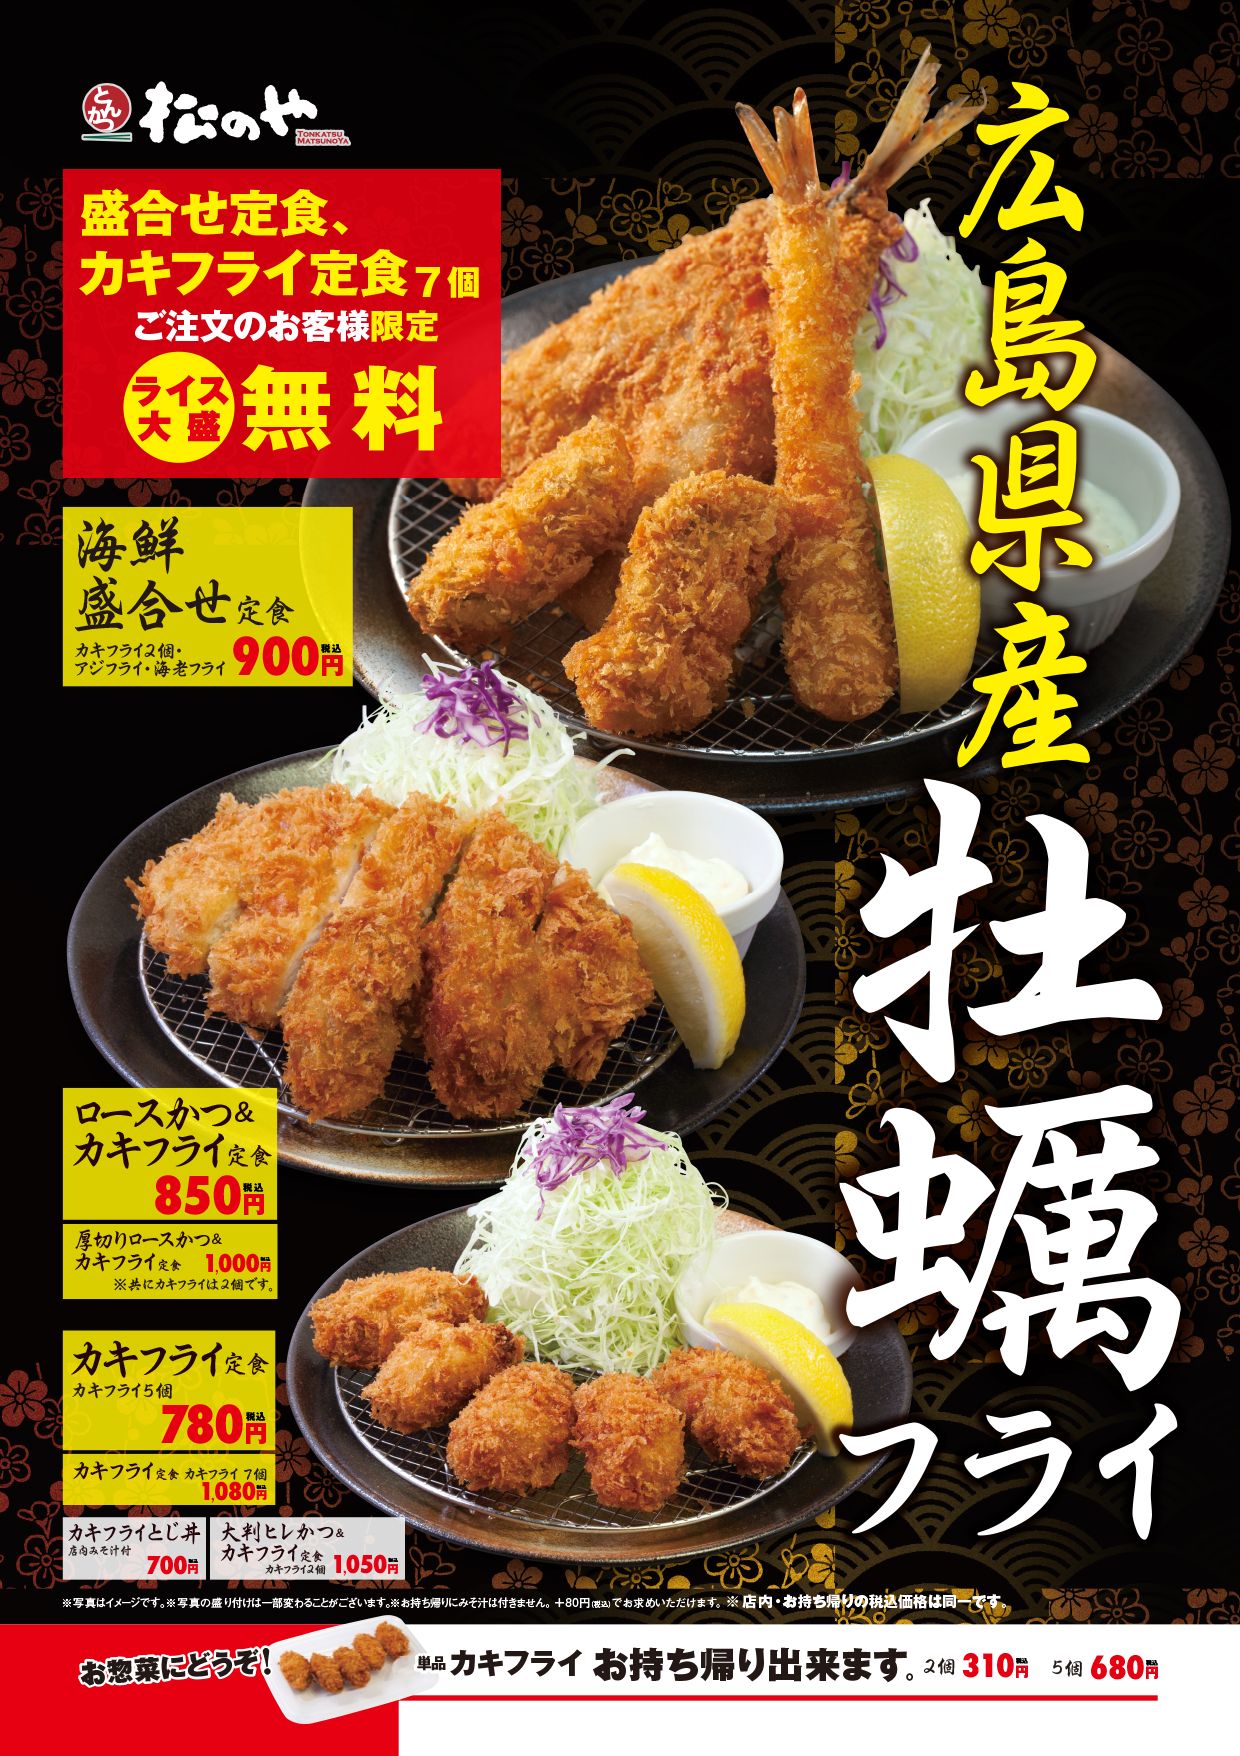 松のや 広島県産の旨味たっぷり カキフライ定食 発売 株式会社松屋フーズホールディングスのプレスリリース